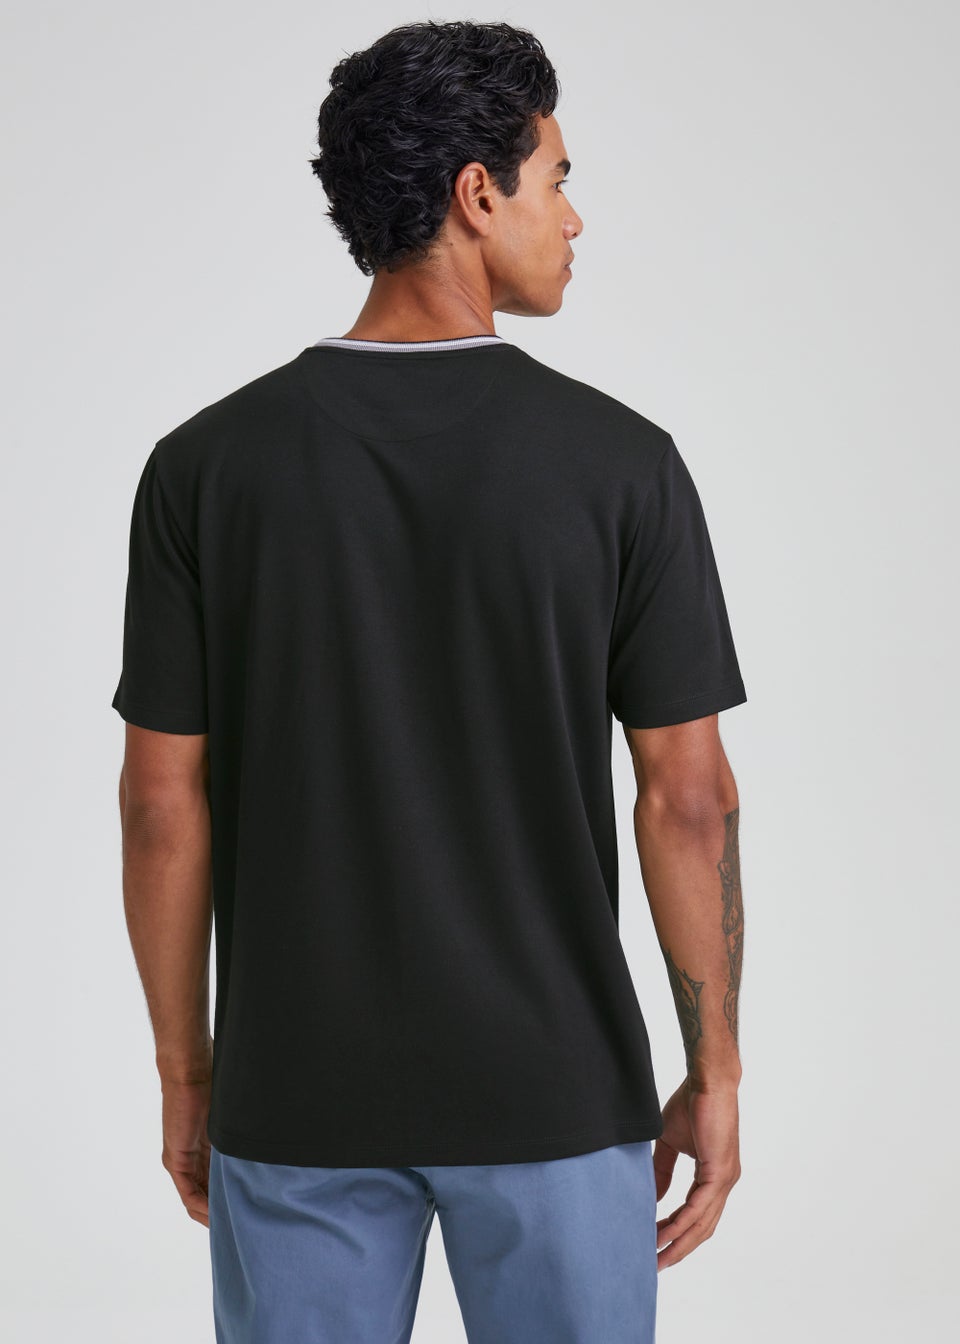 Black Tipped Modal T-Shirt